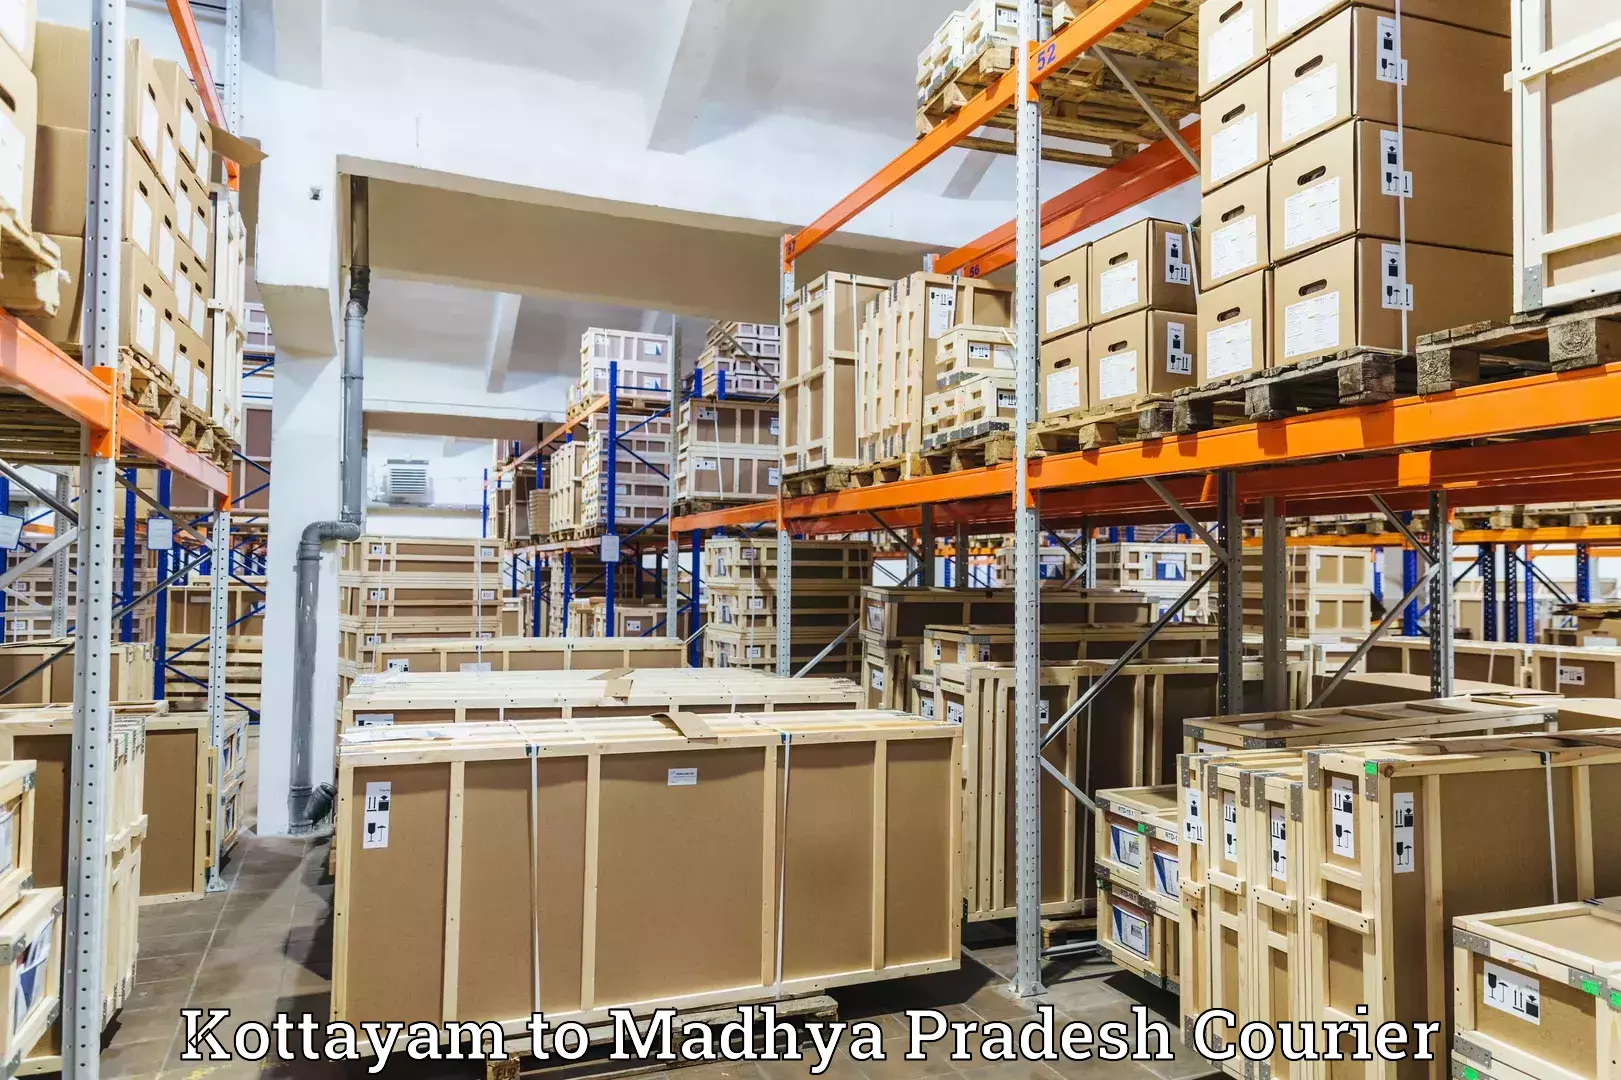 Customer-centric shipping Kottayam to Jatara